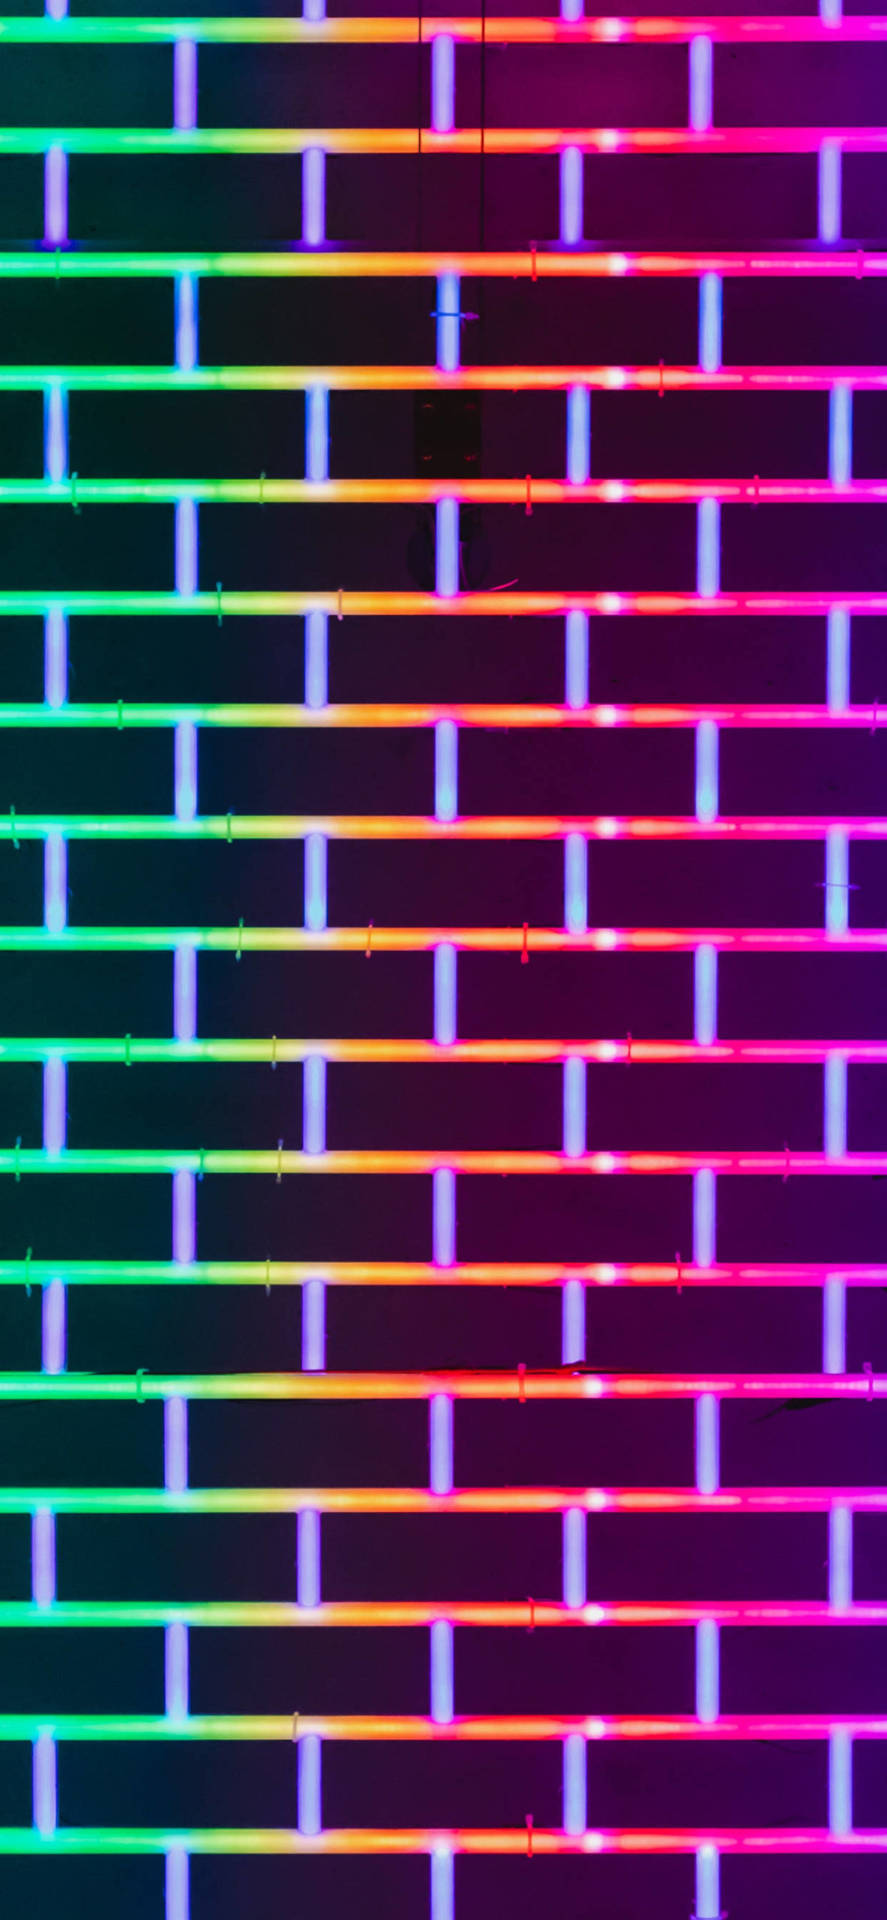 Papelde Parede Em Neon 4k Para Iphone, Inspirado Em Uma Parede De Tijolos. Papel de Parede